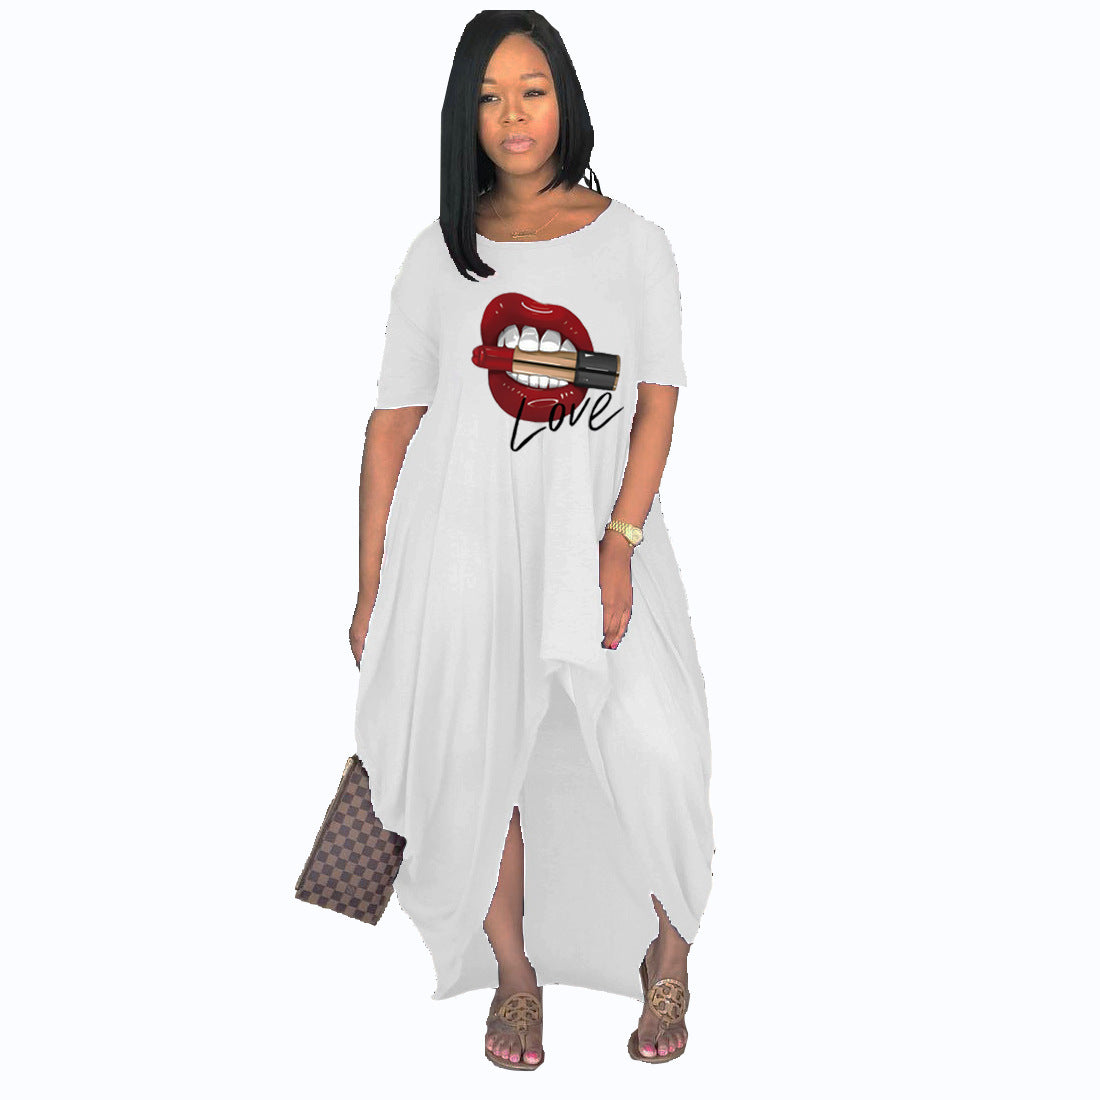 Plus Size Women Long Short Sleeve Dress - DromedarShop.com Online Boutique